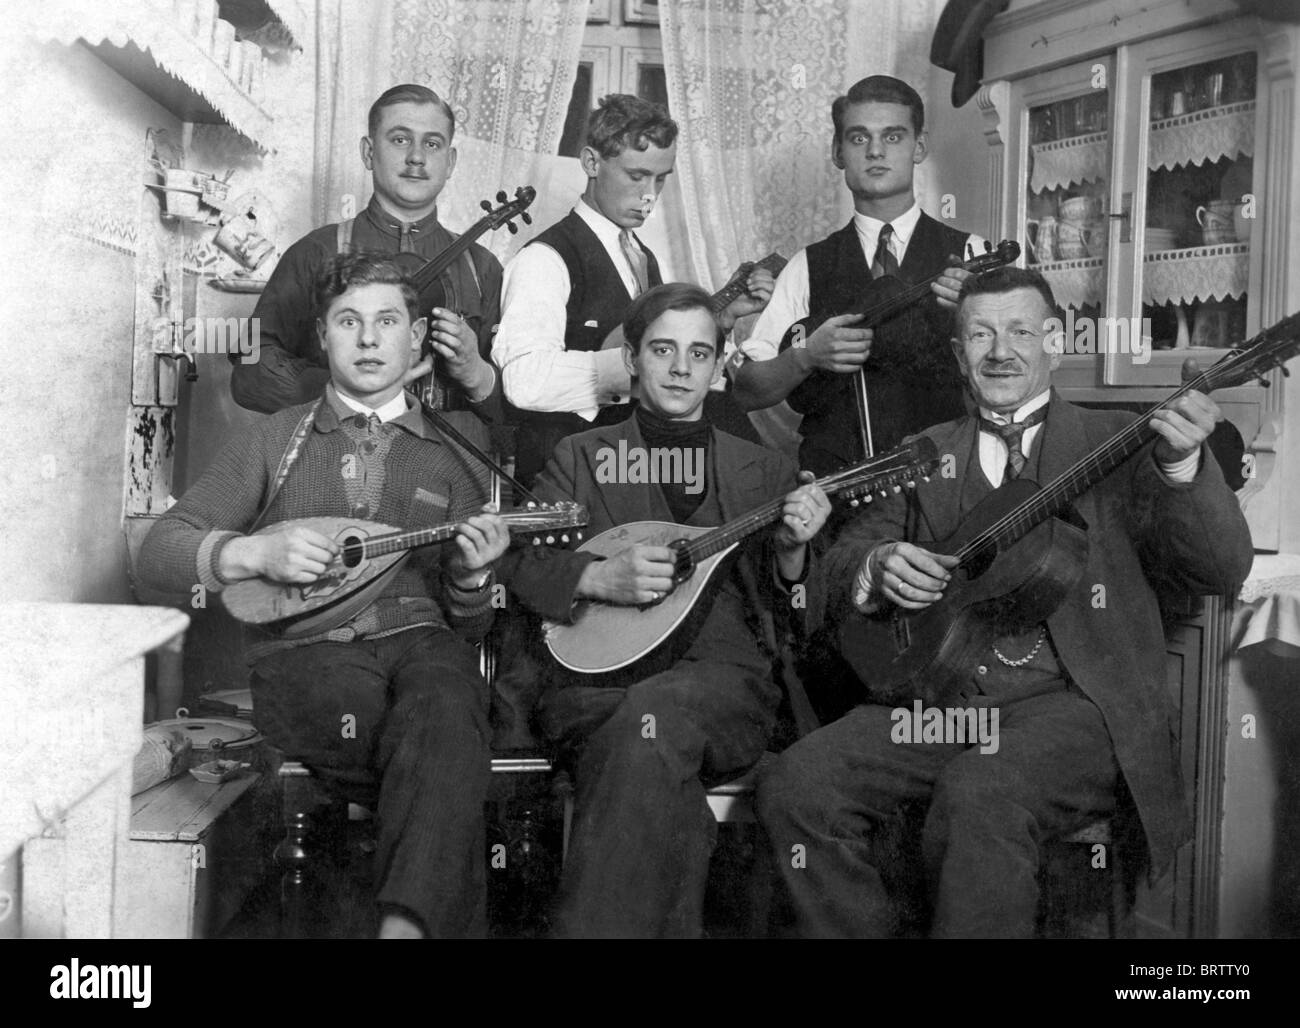 Banda de Músicos, imagen histórica, ca. 1930 Foto de stock